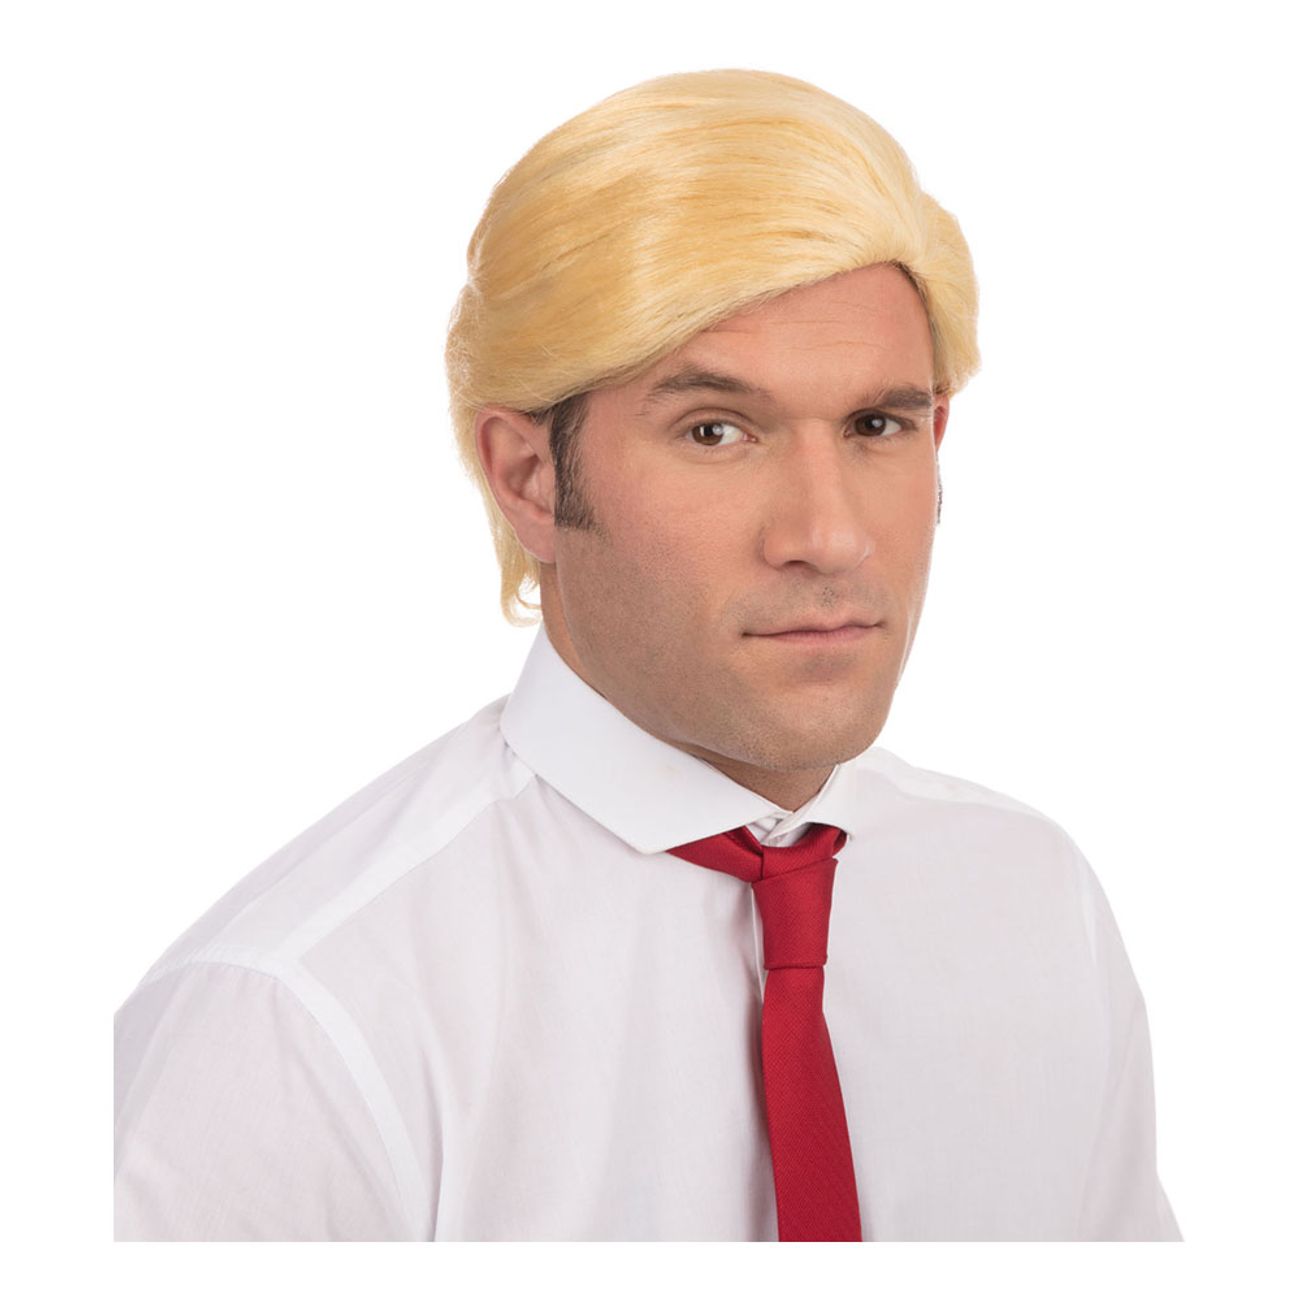 amerikansk-president-blond-peruk-2